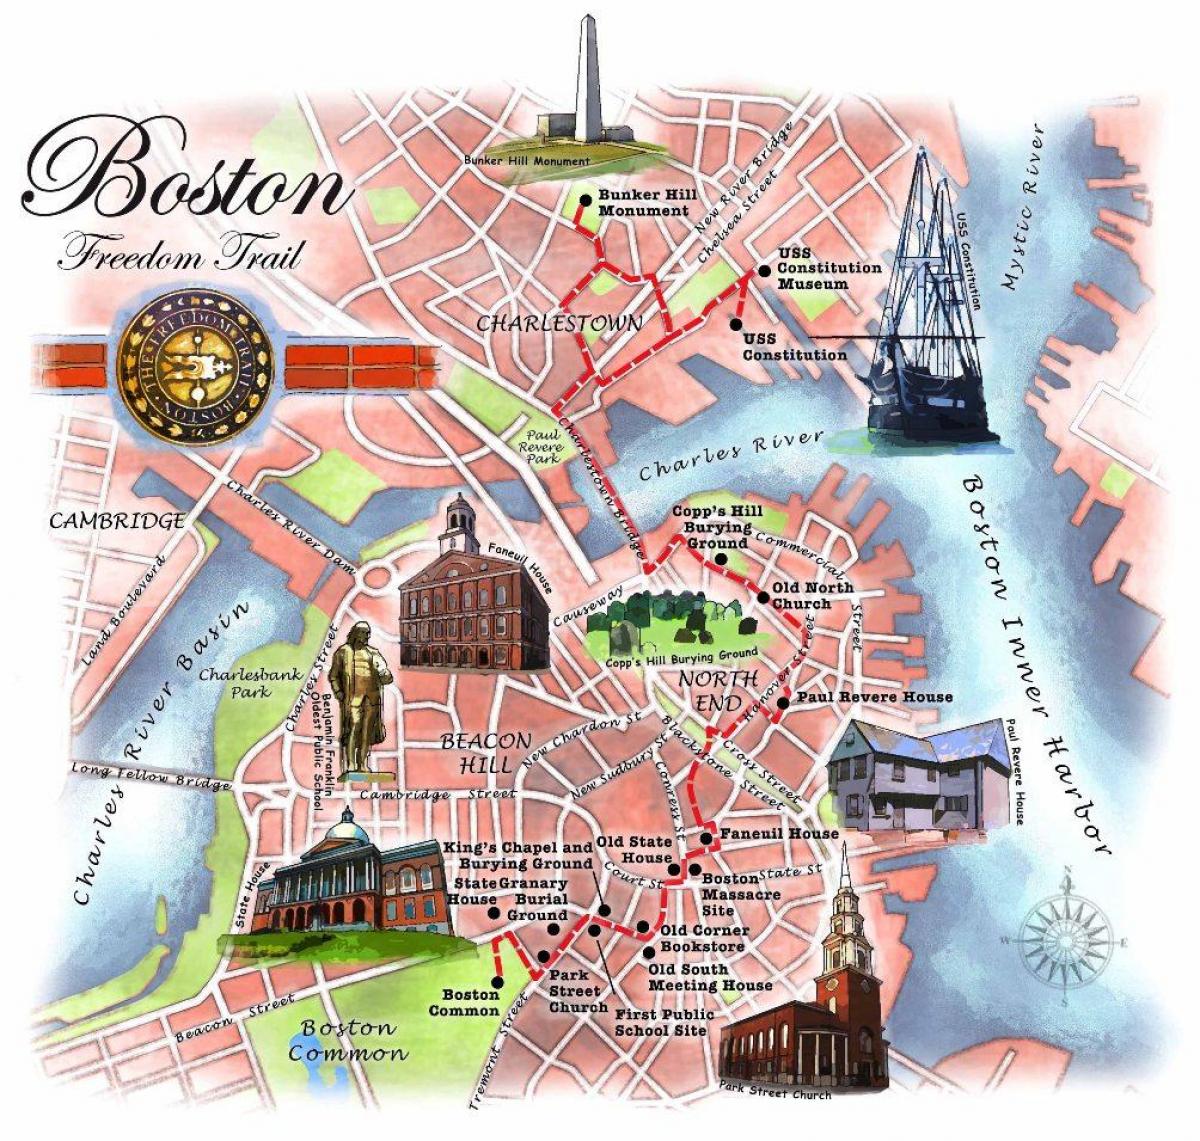 نقشه از بوستون دنباله آزادی